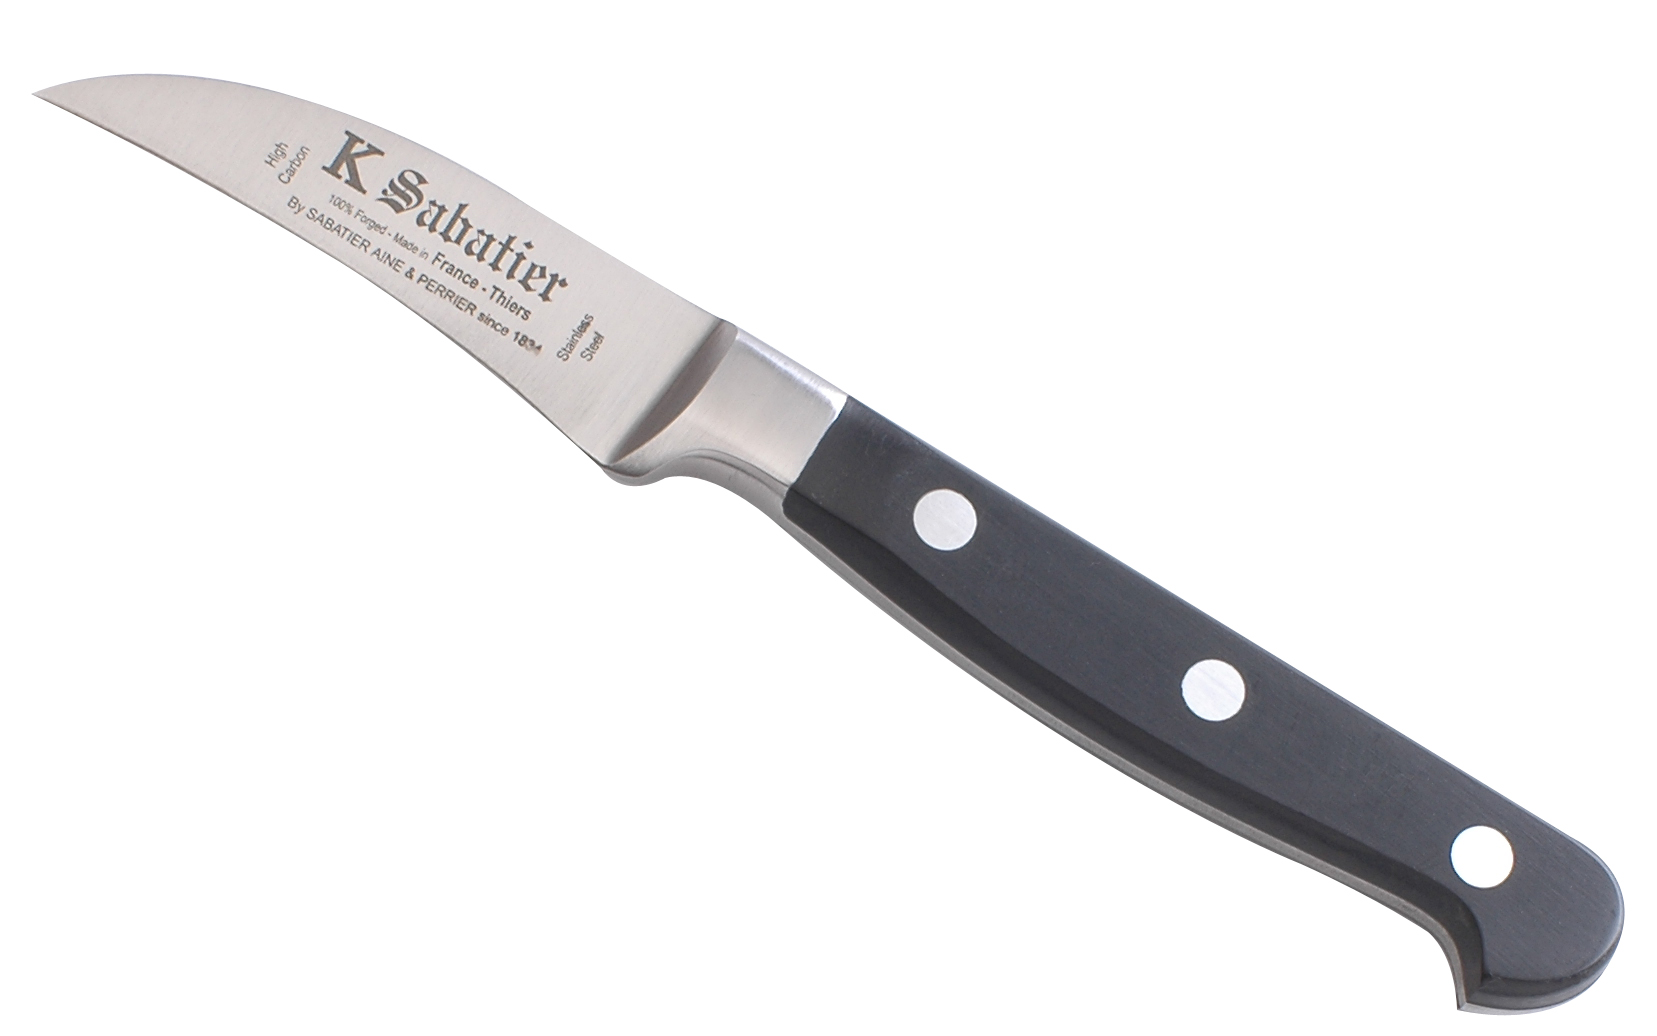 Curved Paring Knife : professional kitchen knife series Bellevue - Sabatier  K